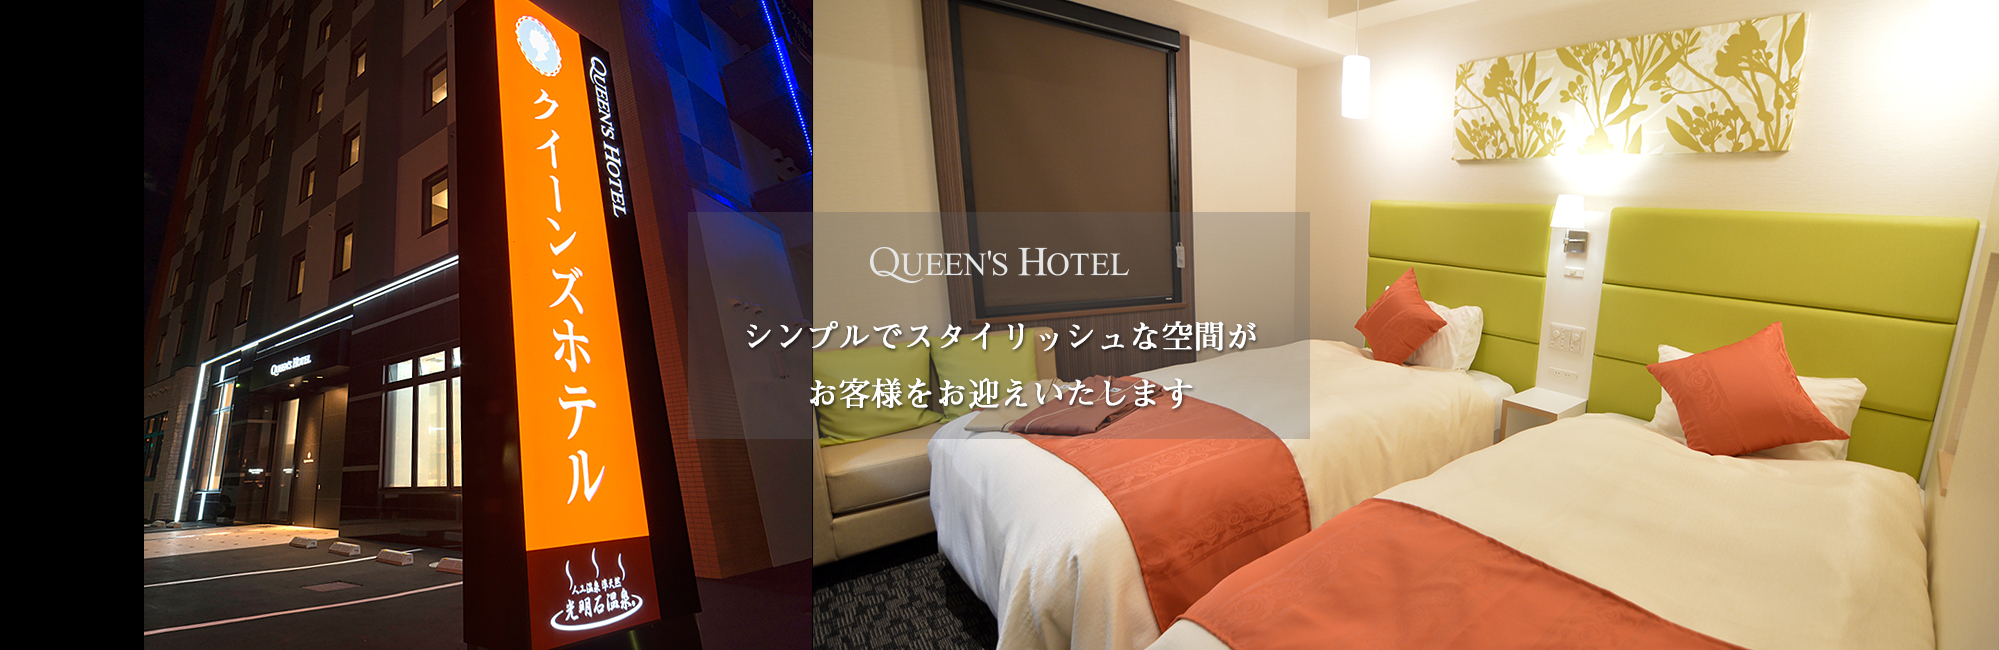 クイーンズホテル千歳では快適に宿泊頂けるようシモンズベッドを導入しております。観光やビジネスに最適